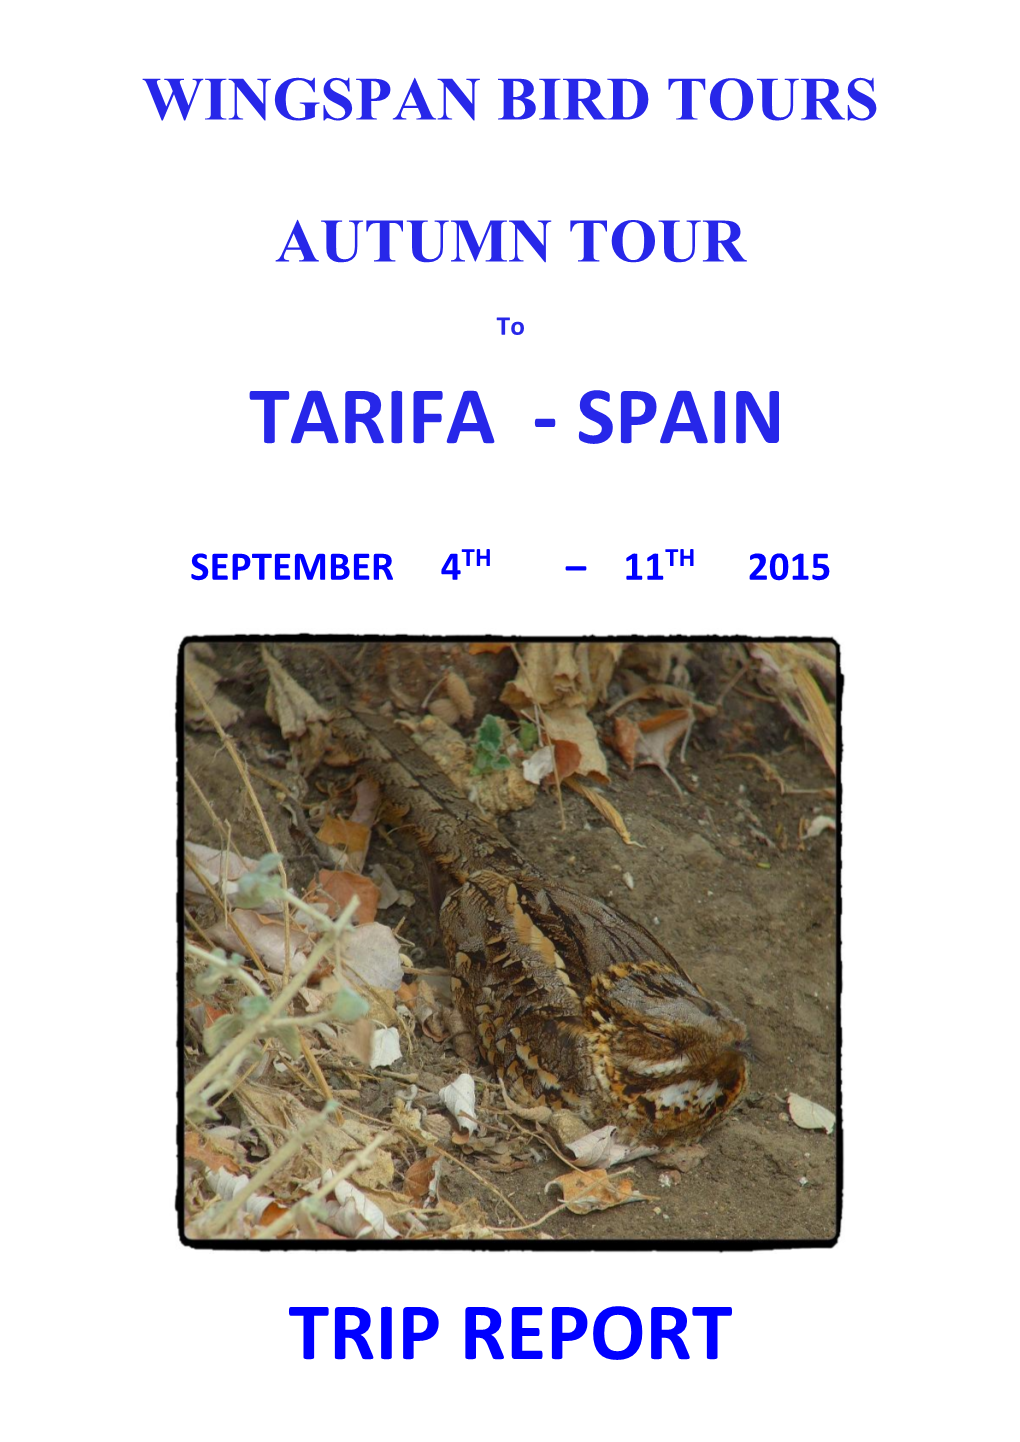 Tarifa - Spain